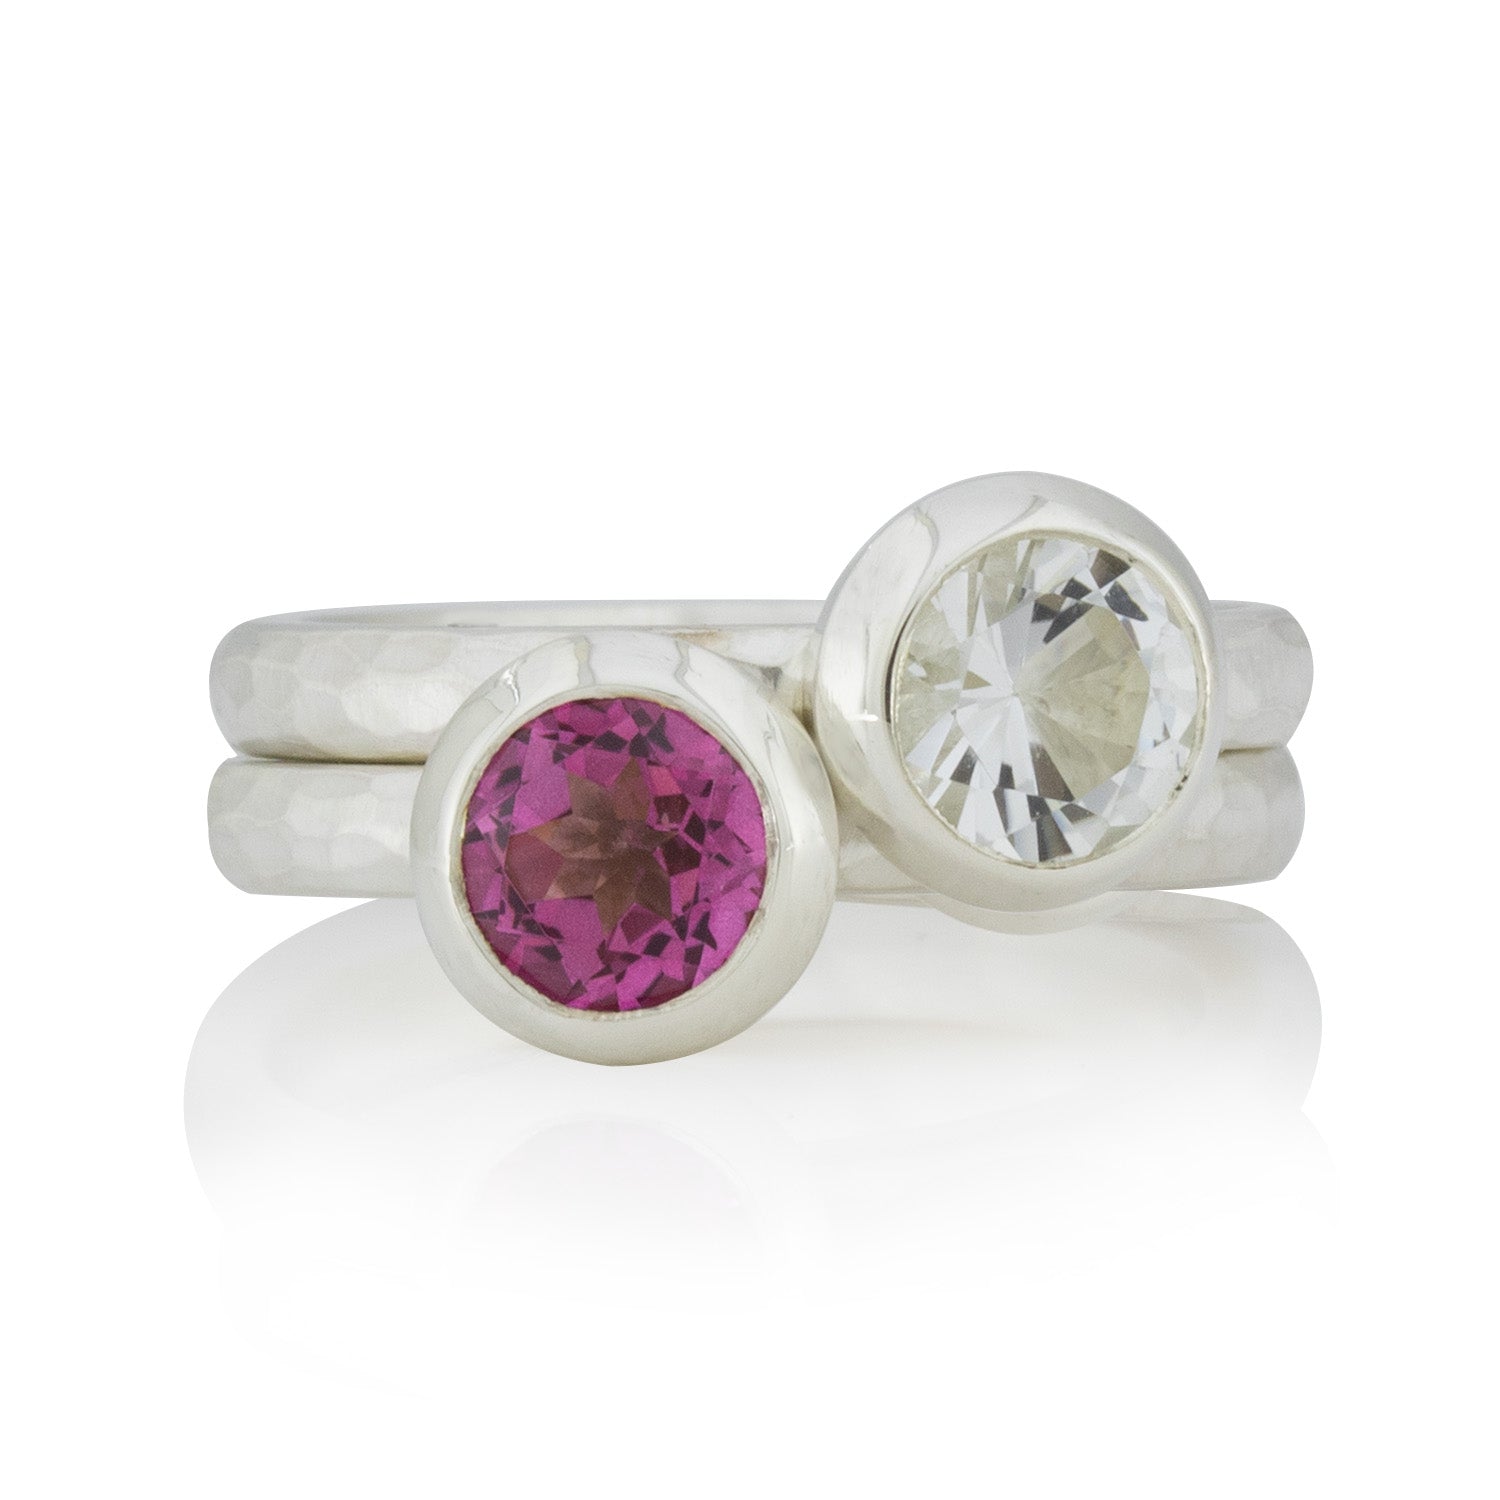 2 Silberring im Set: Geschmiedete Ringe,Topas, pink, weiß